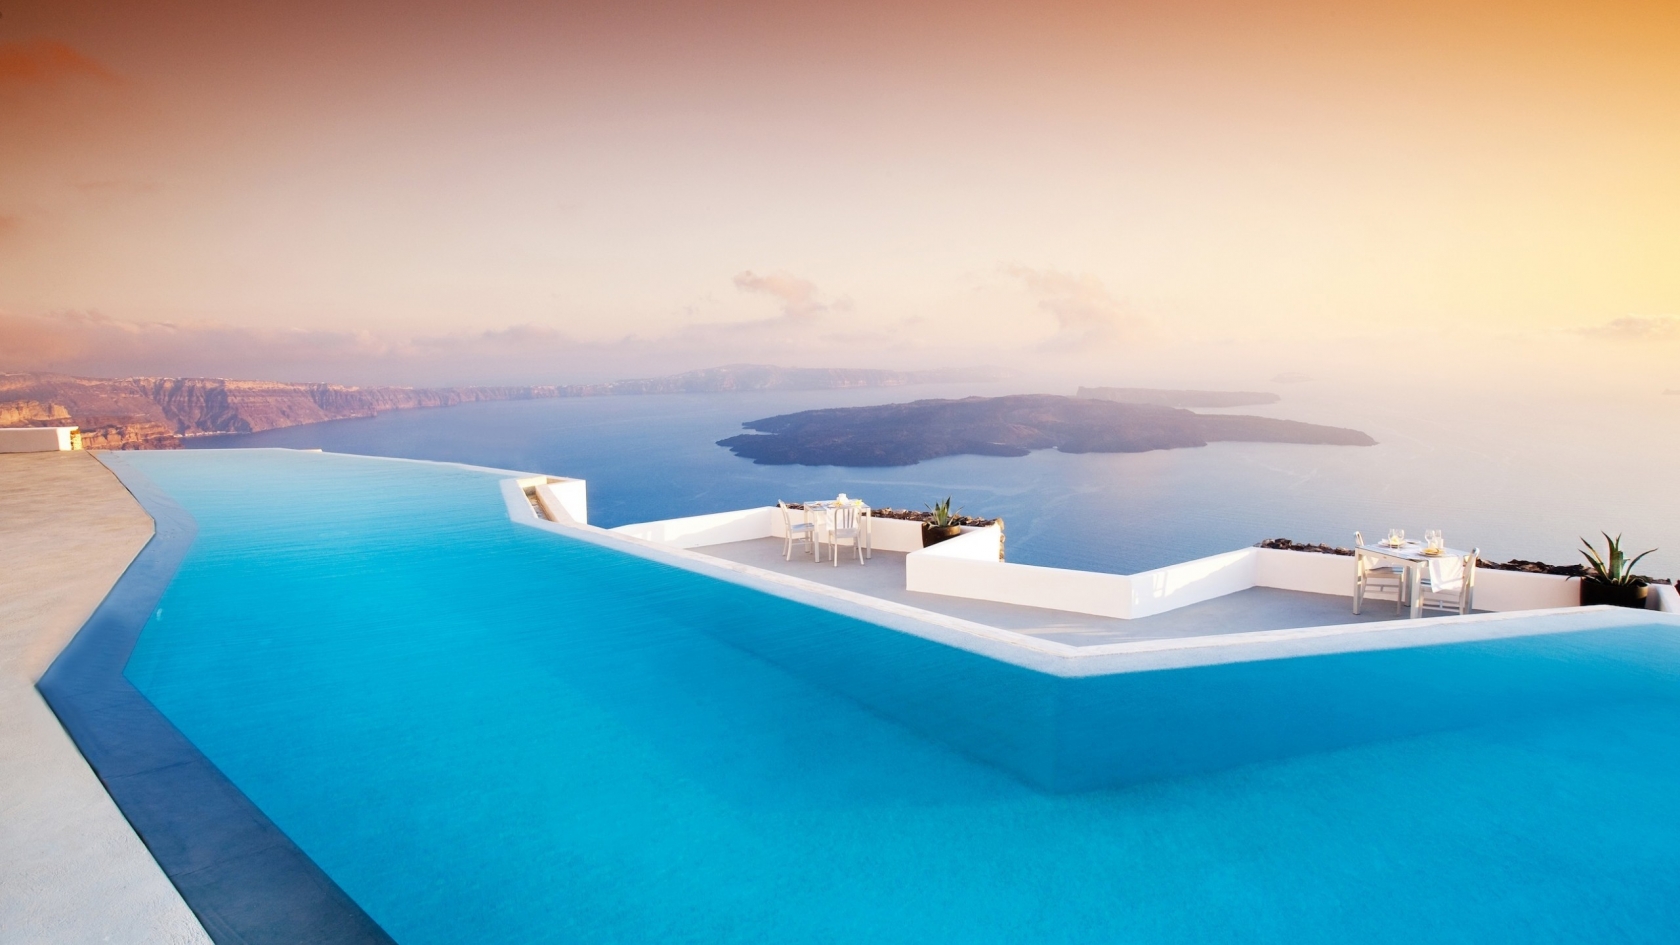 Santorini Pool for 1680 x 945 HDTV resolution